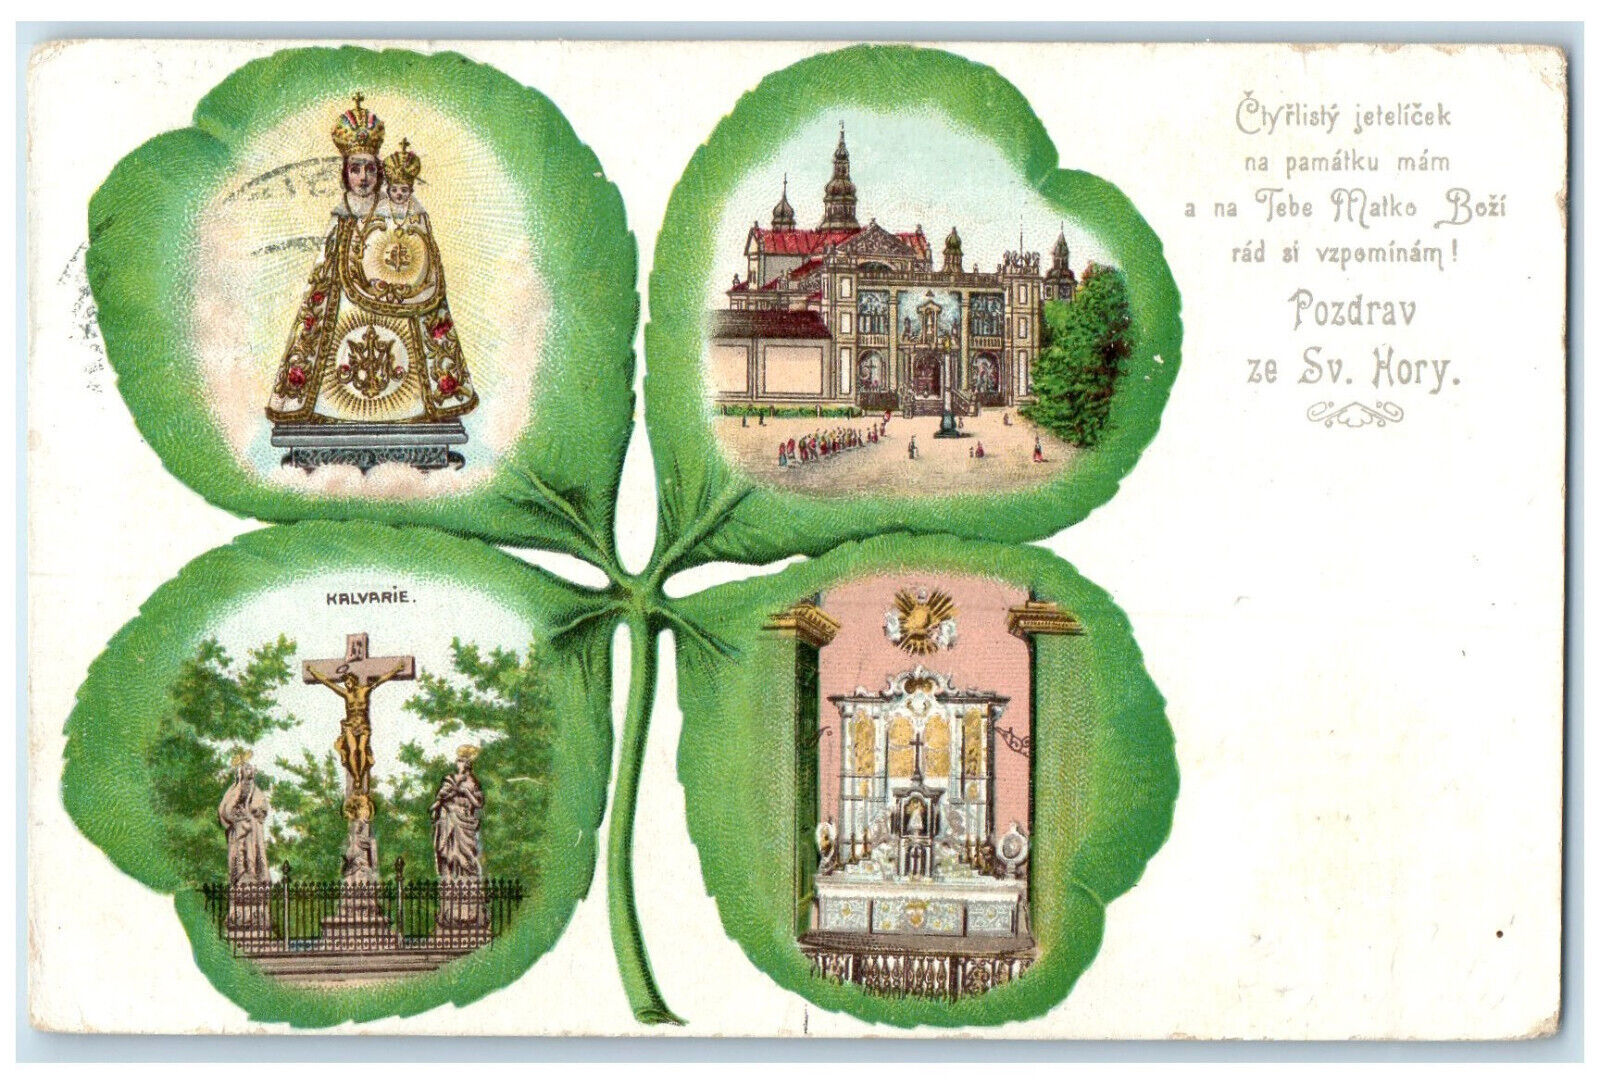 1908 Greetings from Svata Hora u Pribrami Czech Republic Antique Postcard